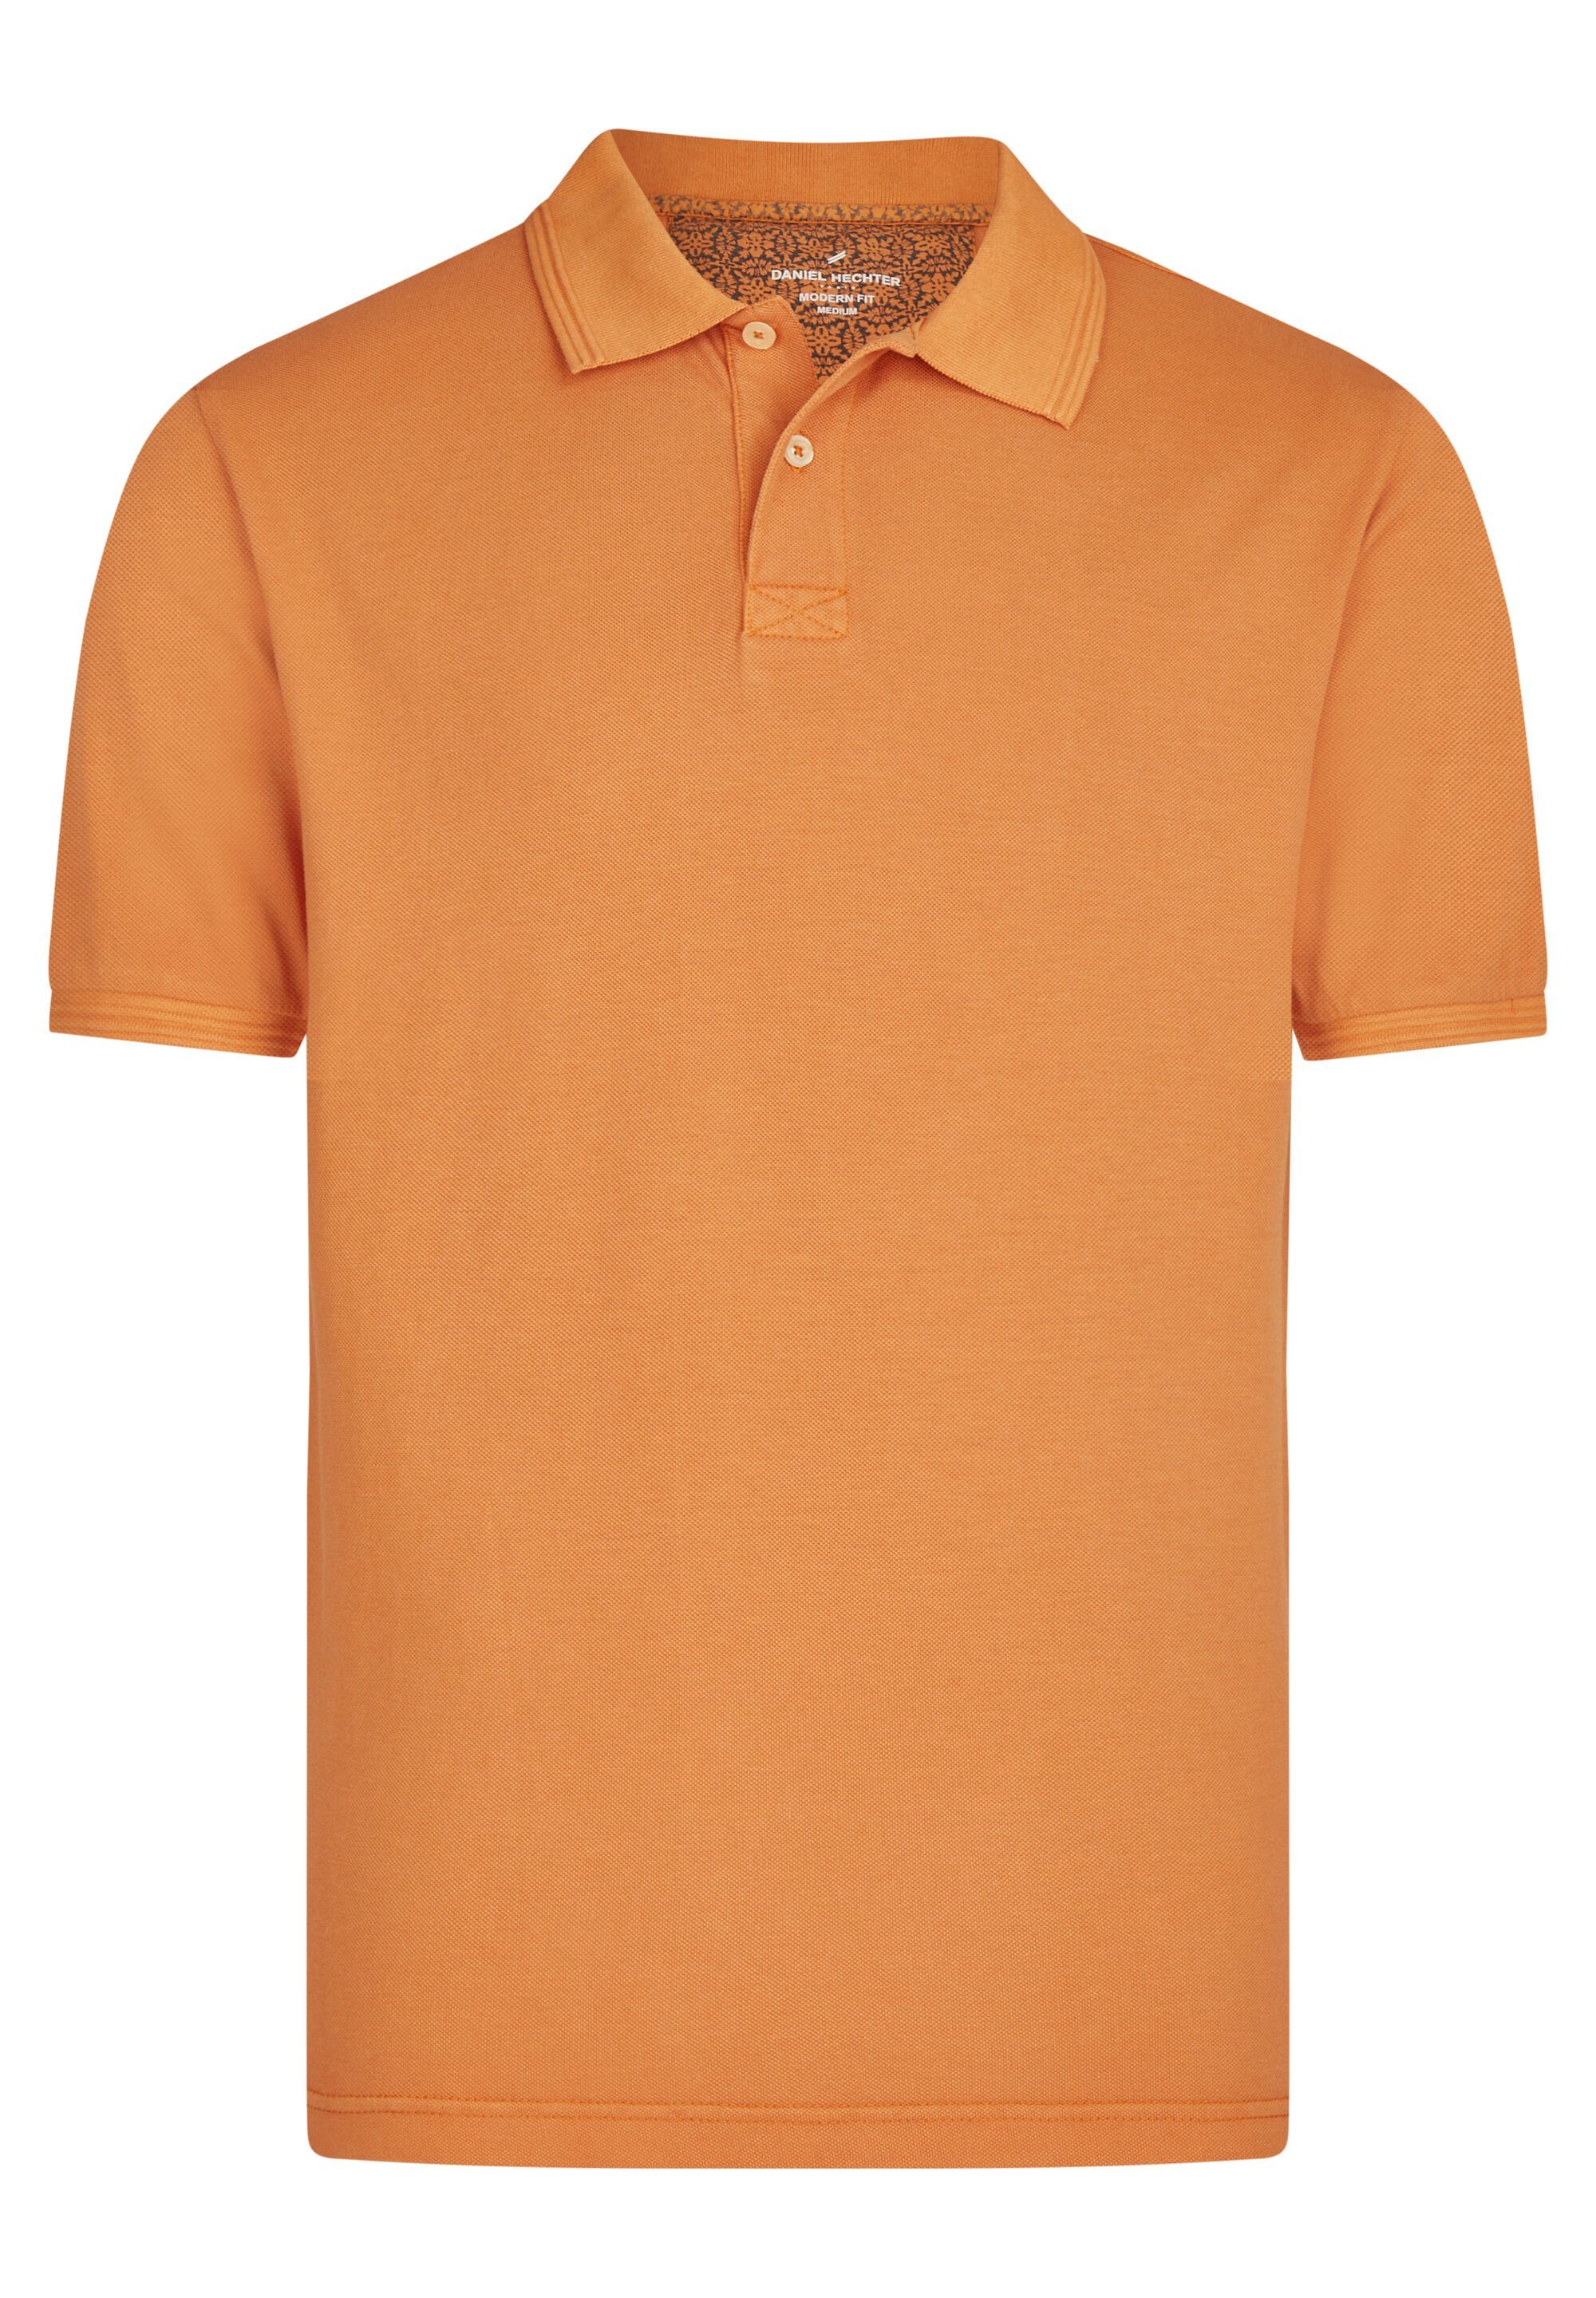 HECHTER PARIS Poloshirt Pique-Poloshirt Gerader Schnitt orange